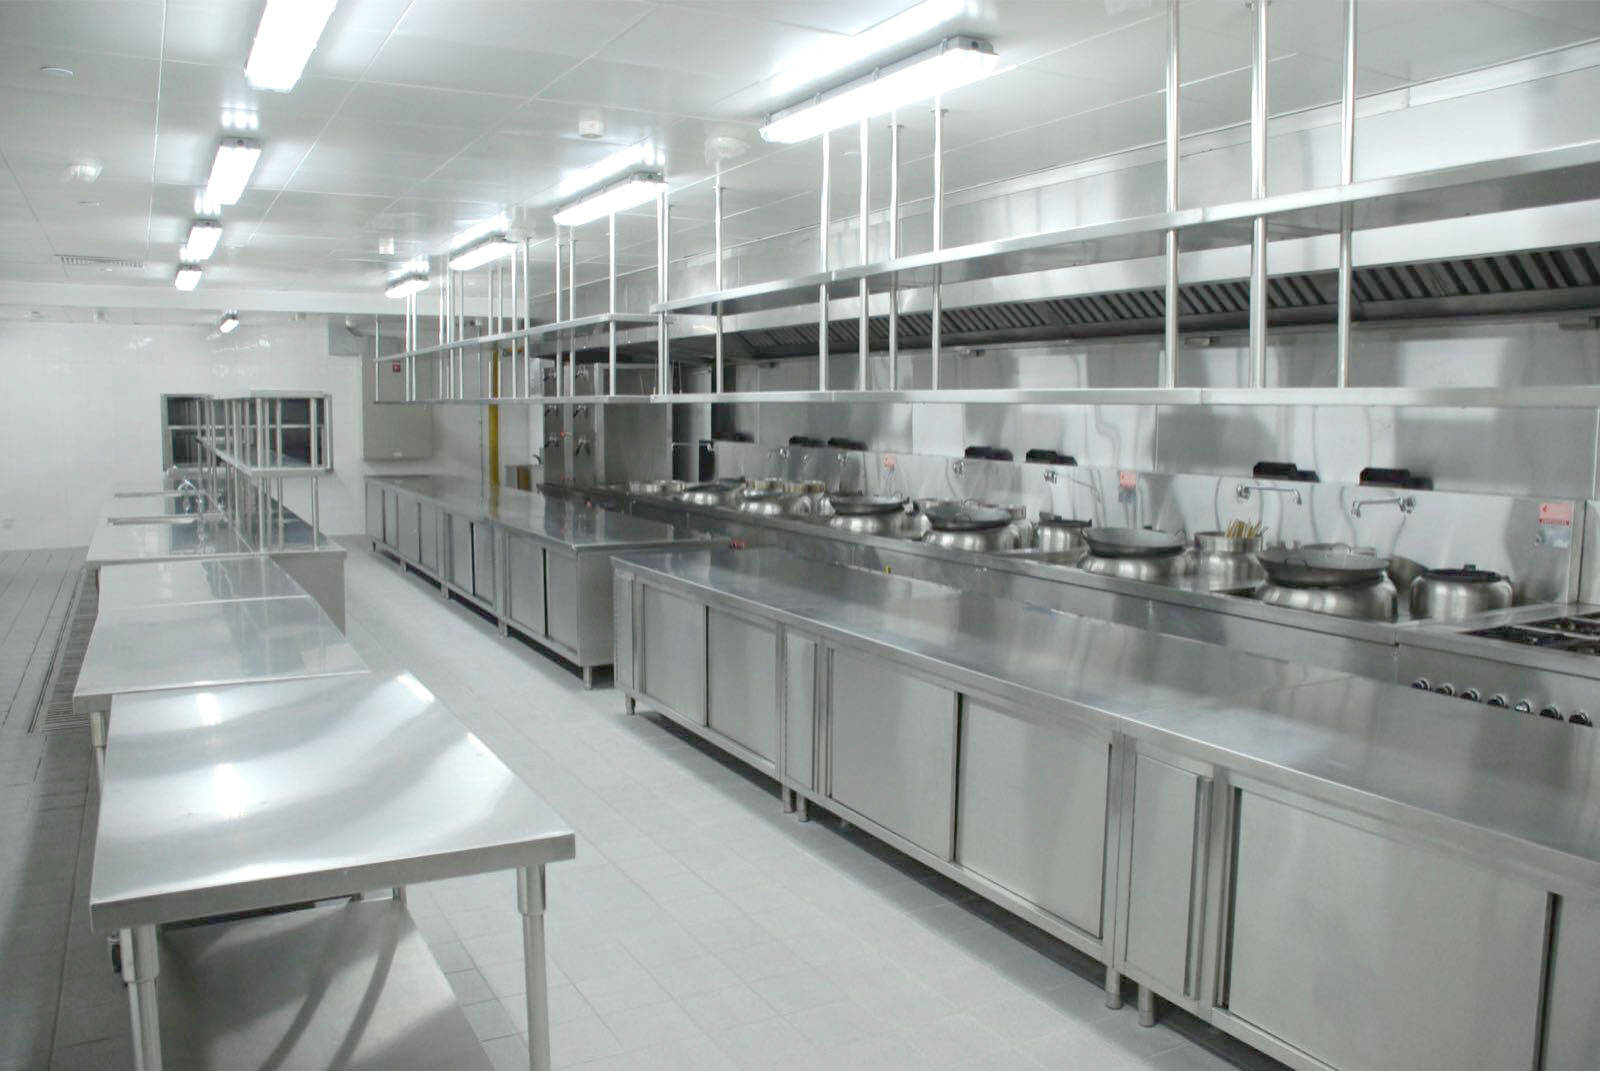 高校食堂的后厨厨房设备应该怎么匹配呢?需要什么专业设备?